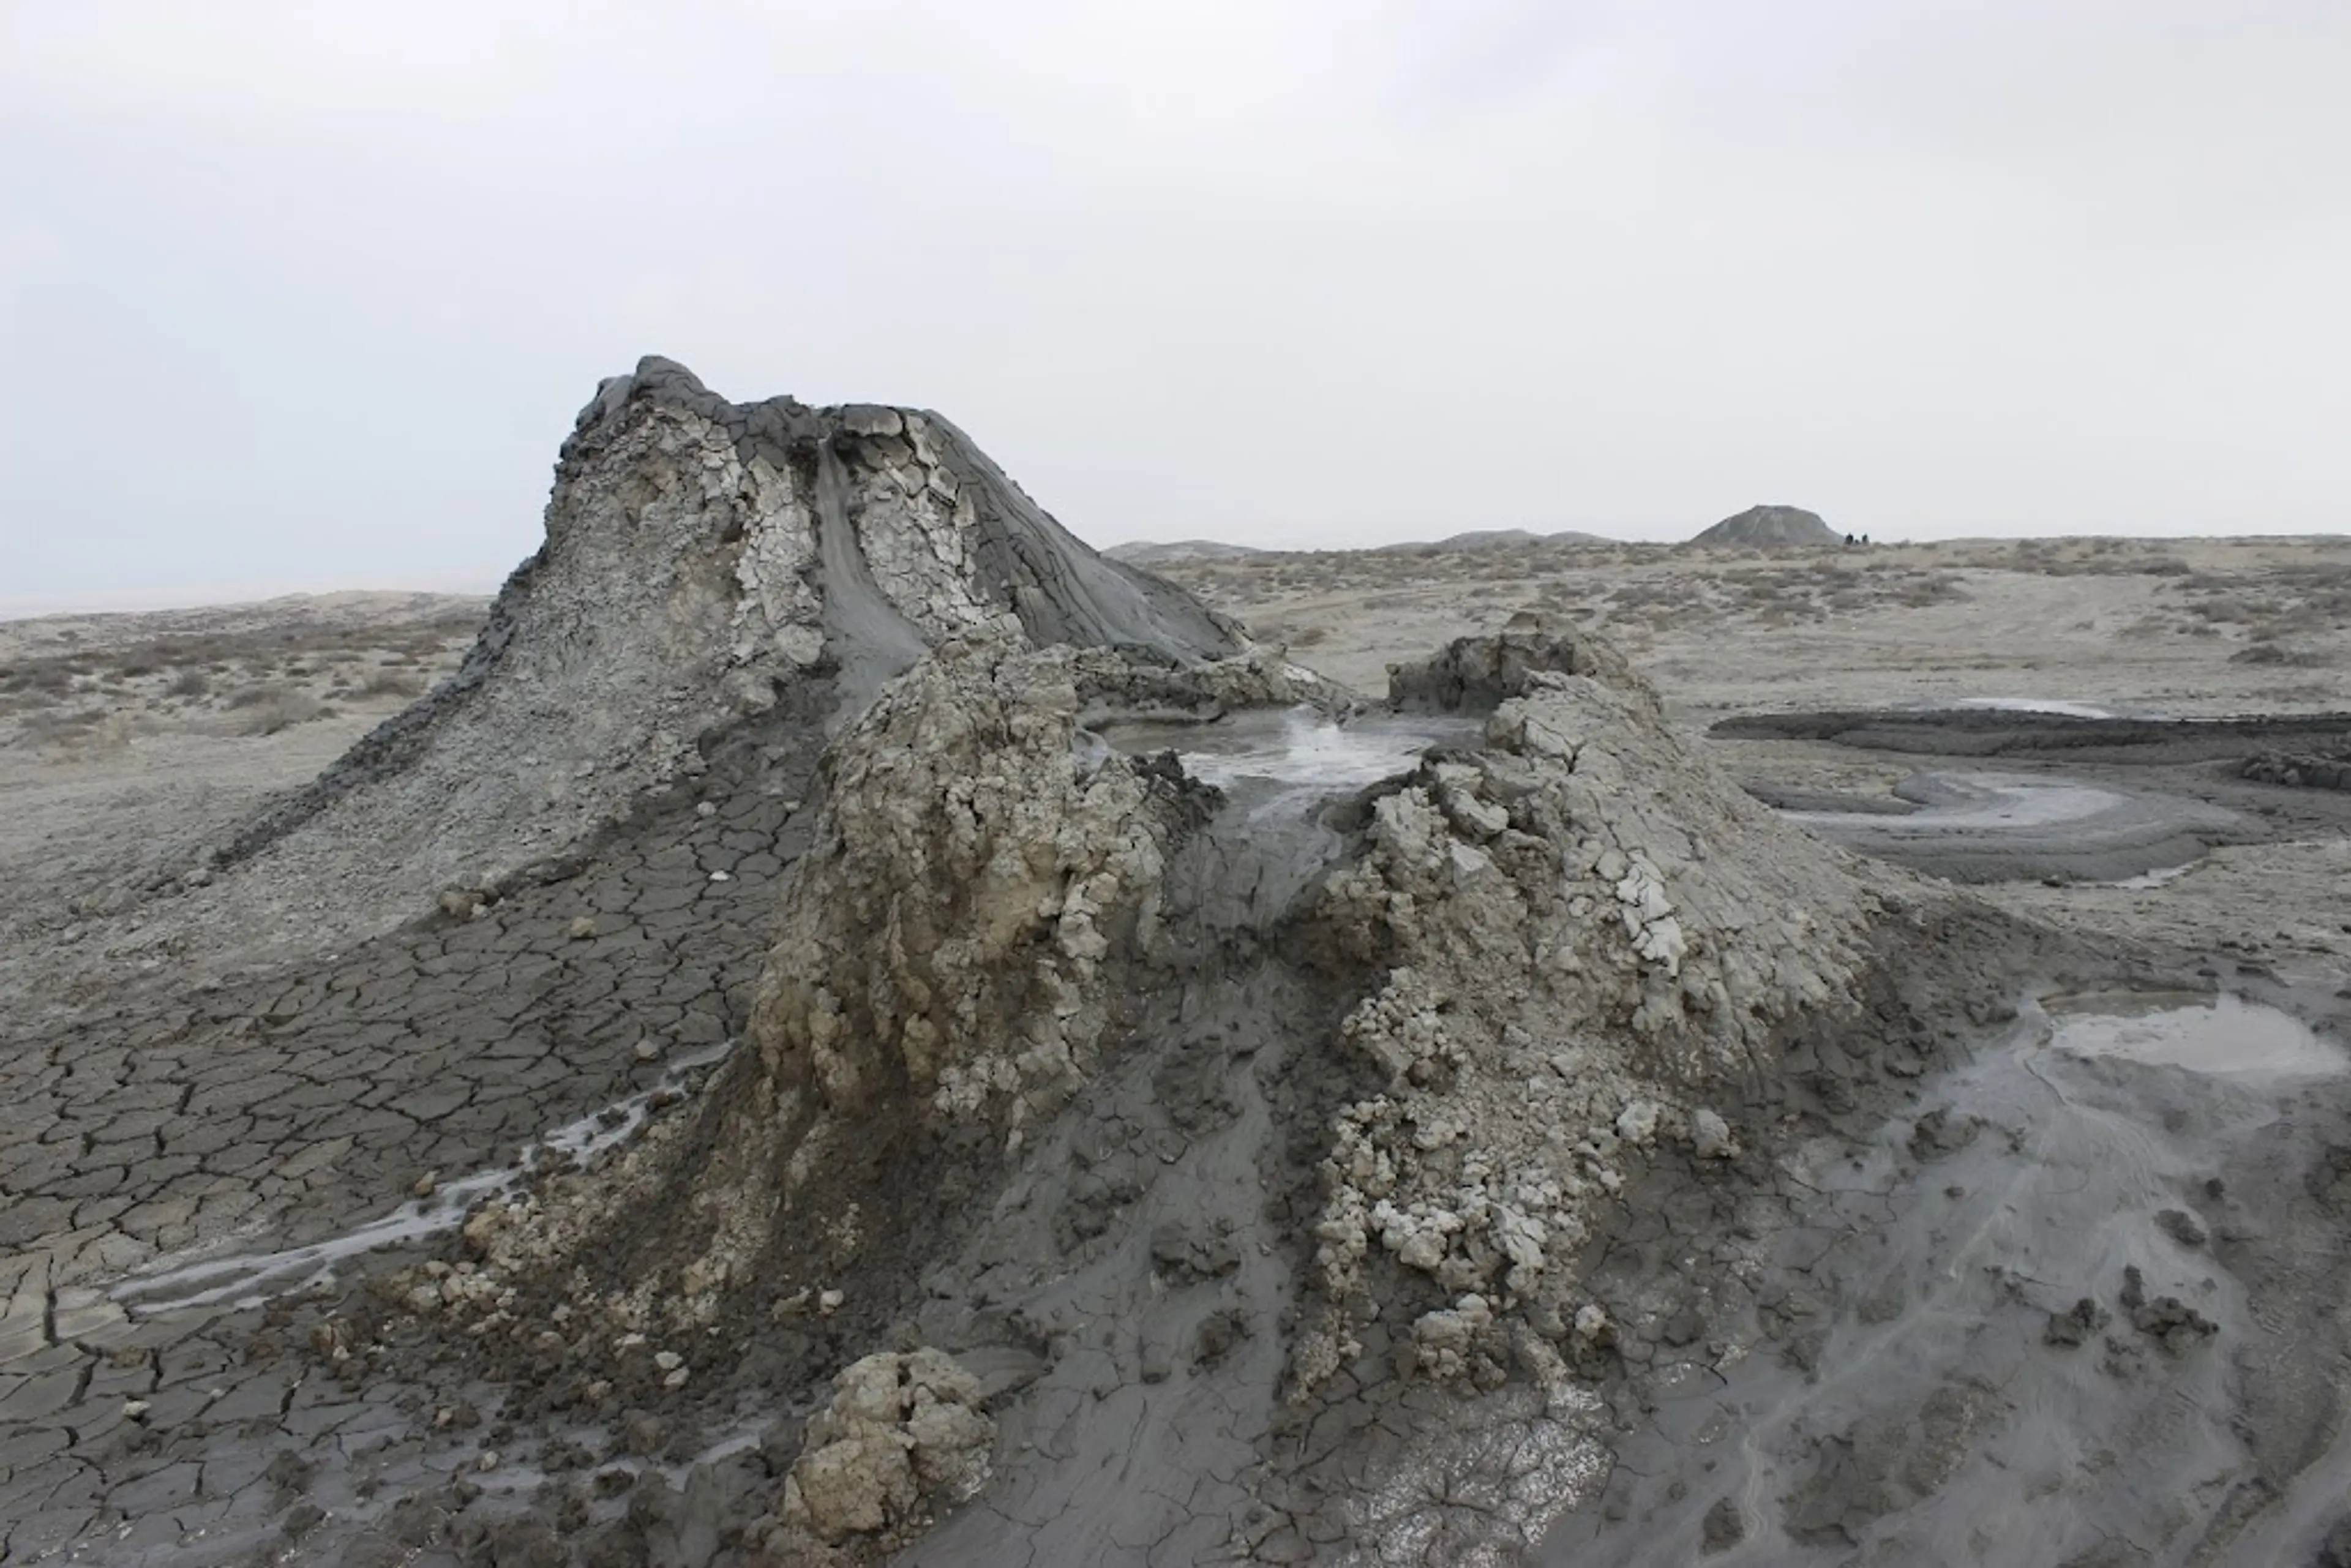 Mud Volcanoes